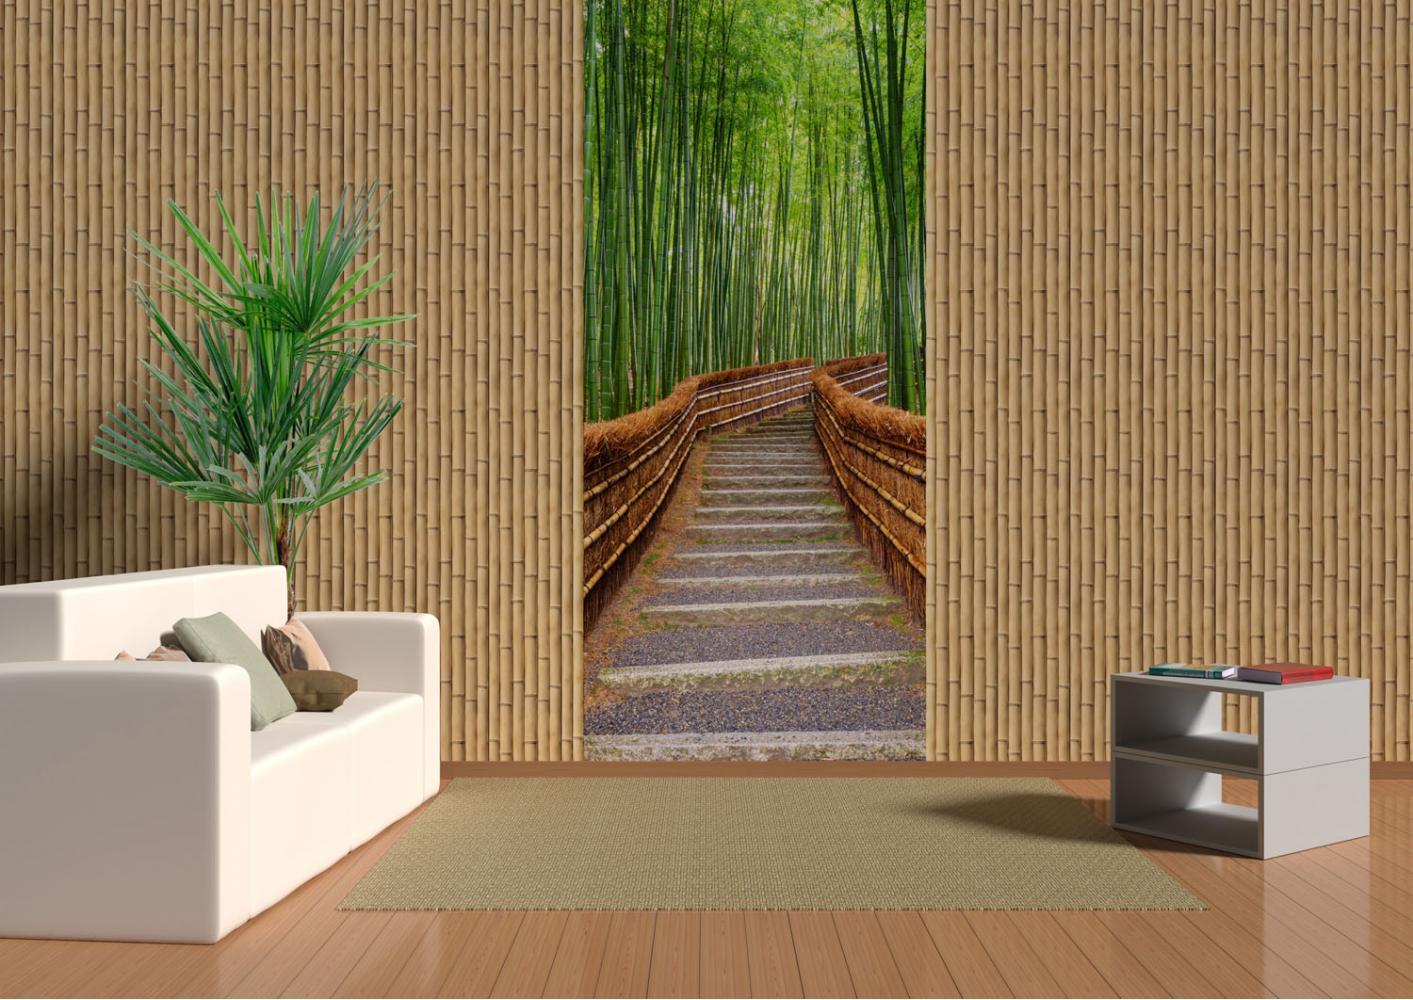 3д панели в интерьере из бамбука